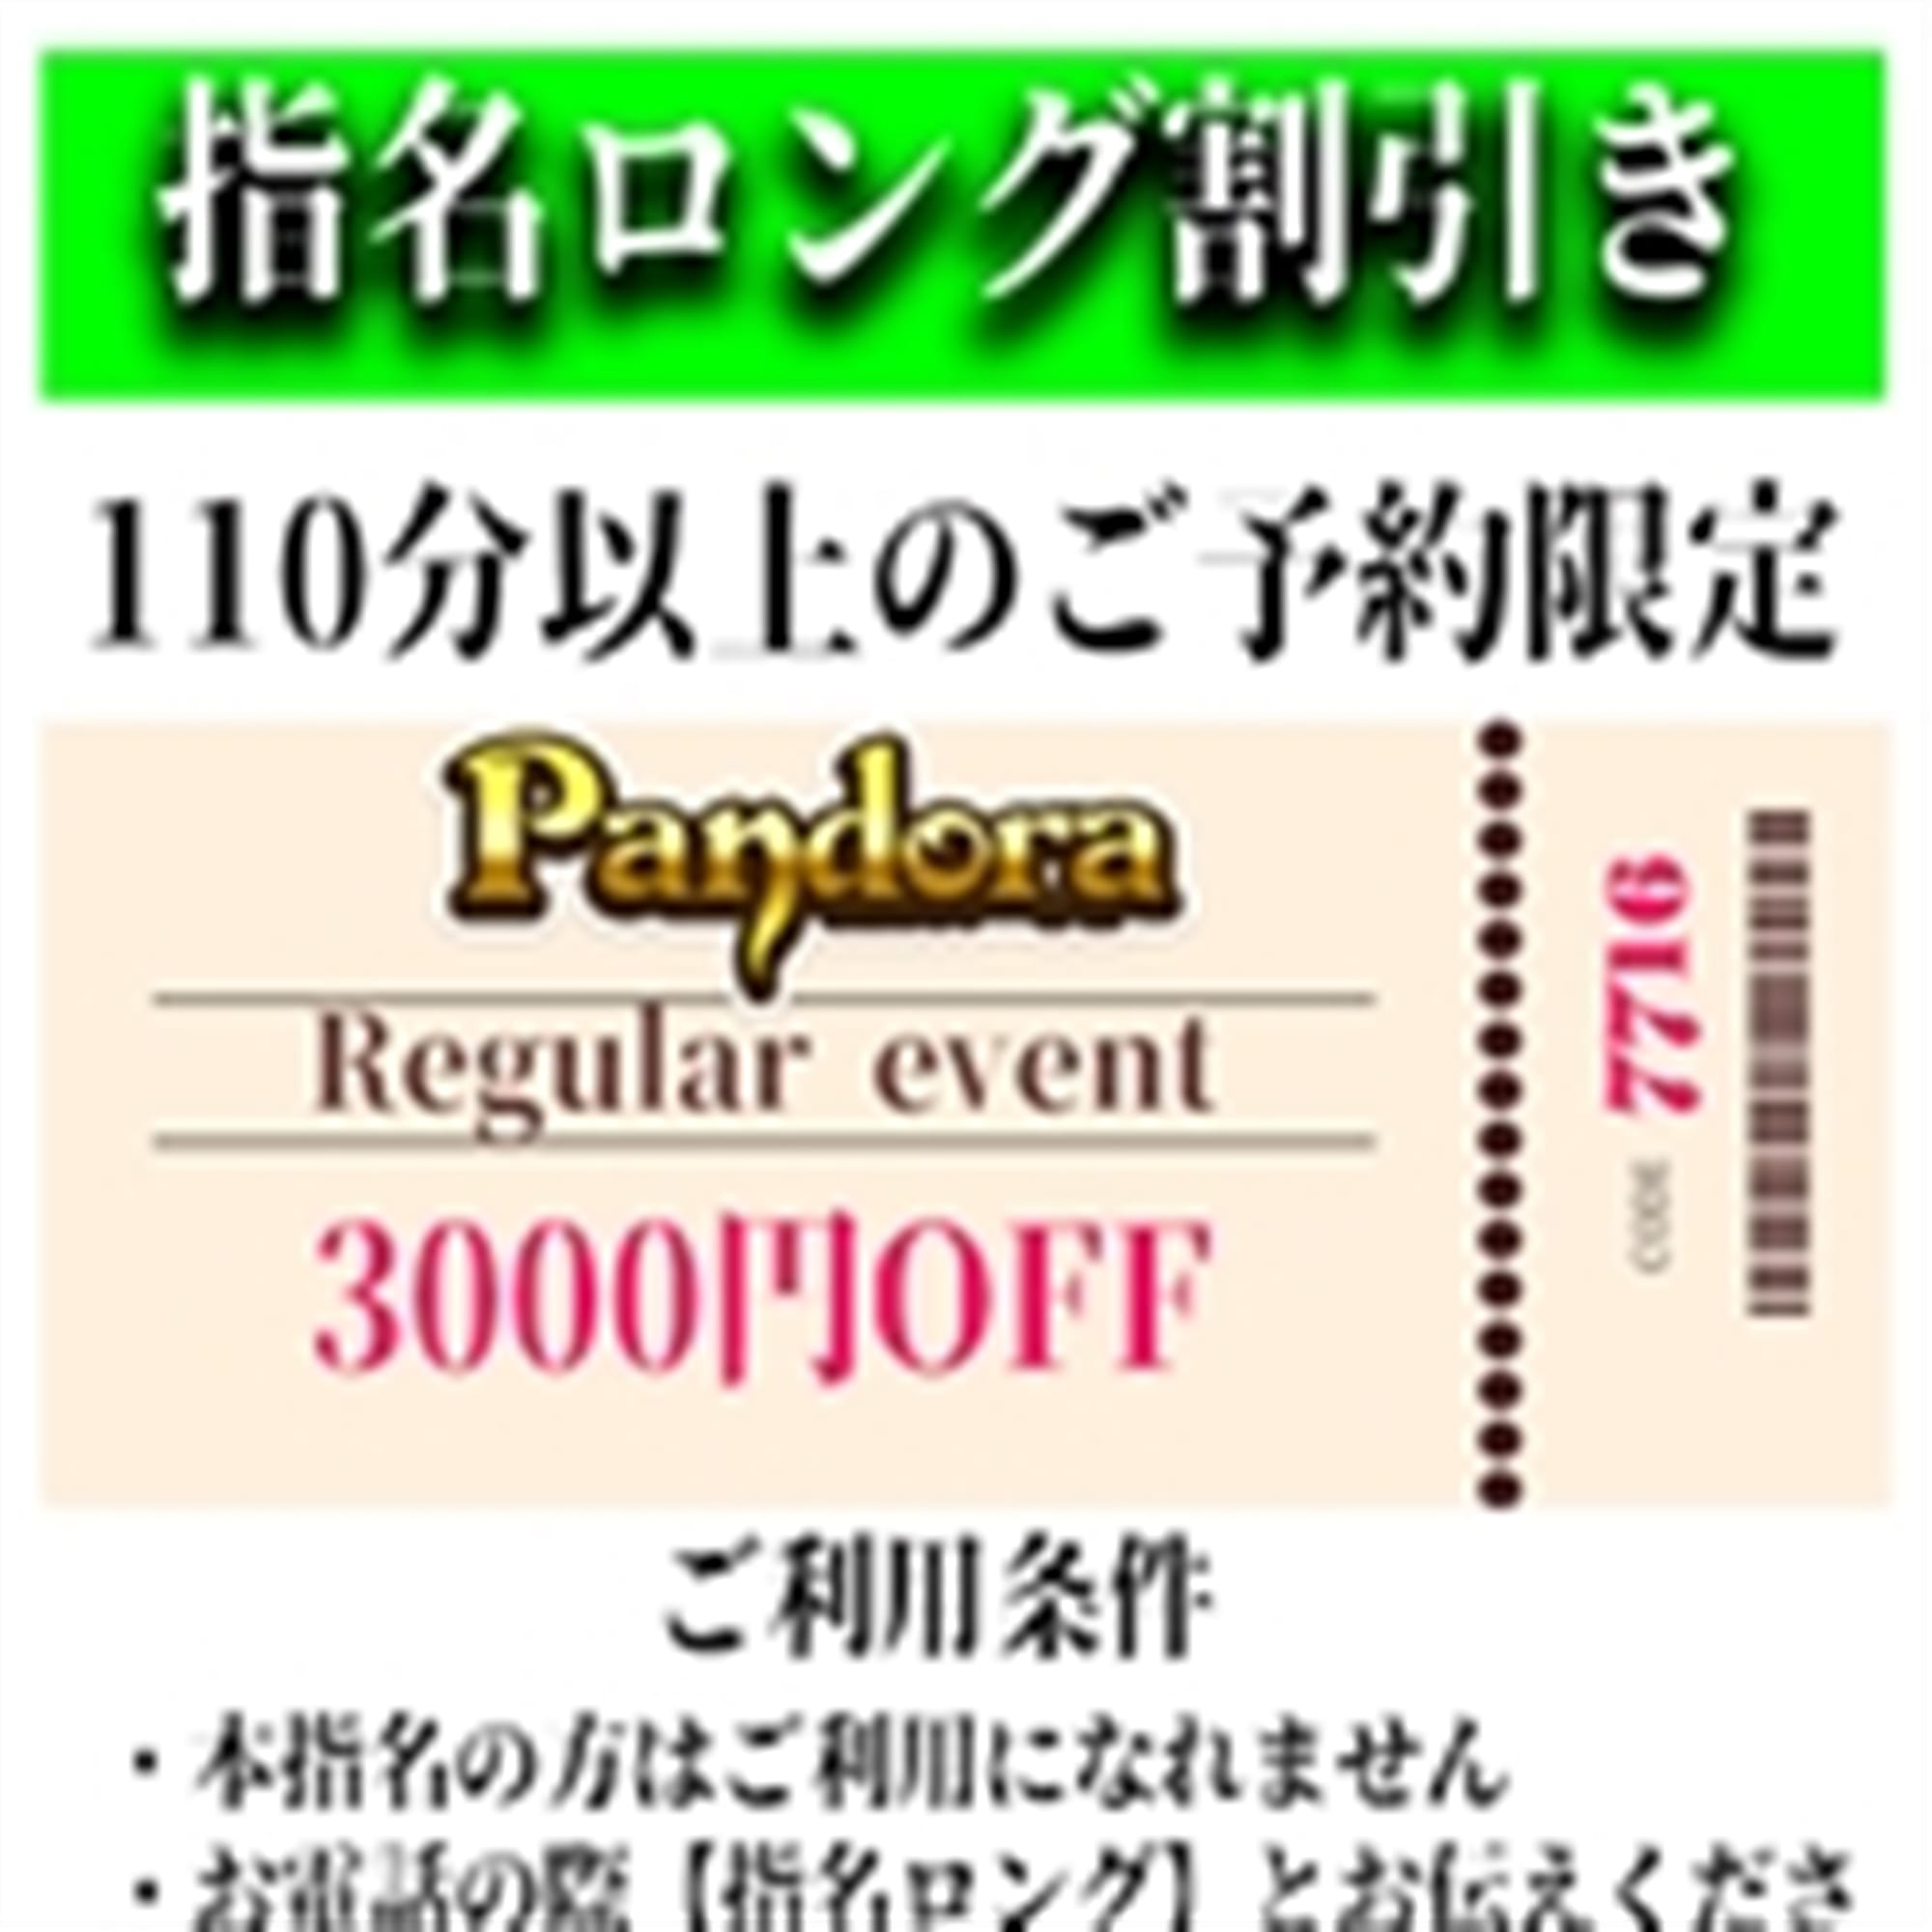 「ご指名のお客様も遊べるロングコース割引」04/25(木) 21:07 | Pandora(パンドラ)新潟のお得なニュース